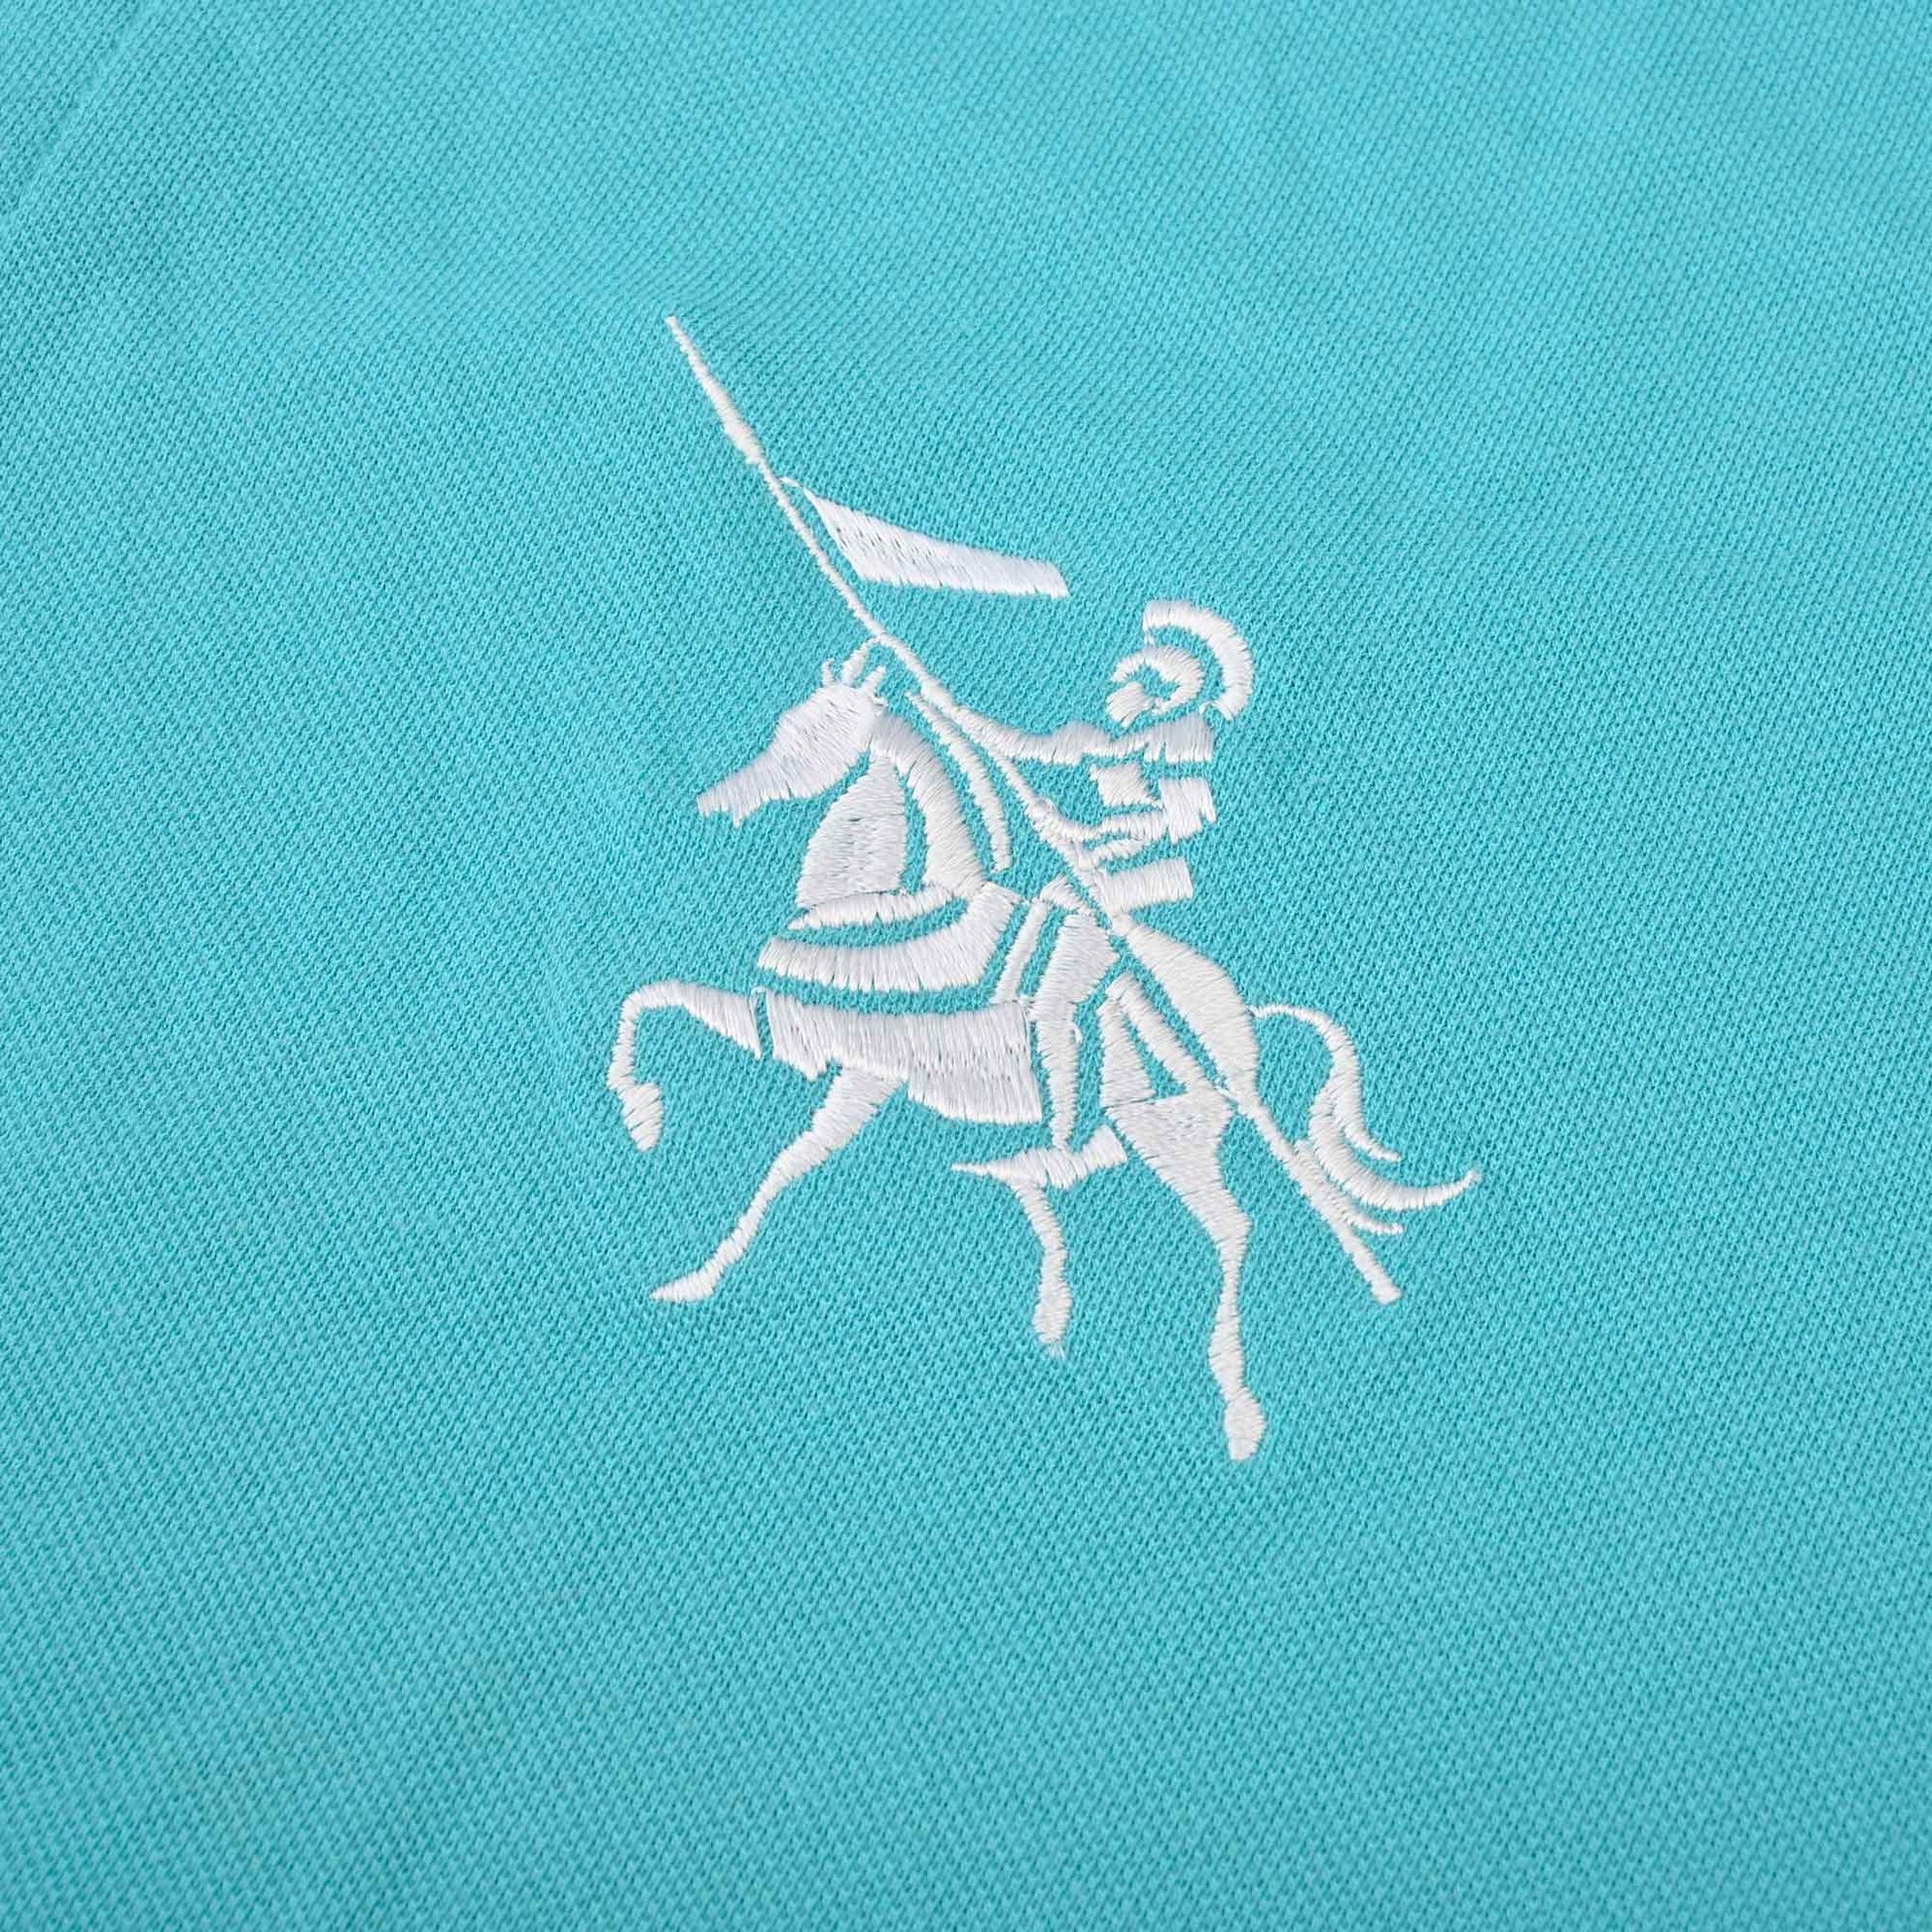 Polo Republica Men's Cavalry & 5 Embroidered Short Sleeve Polo Shirt